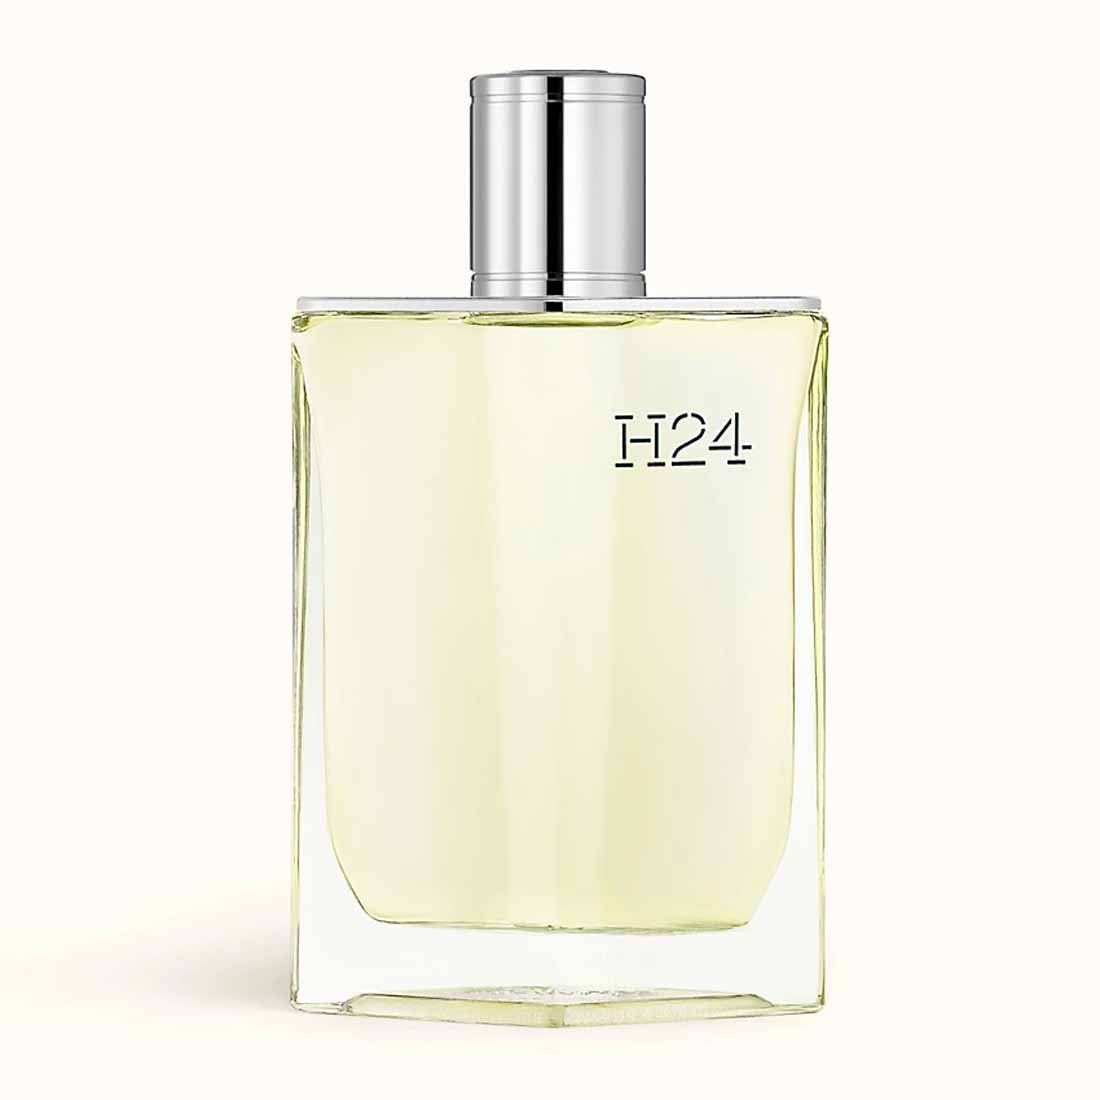 Hermes H24 For Men Perfume Edt 100ml - Allurebeautypk